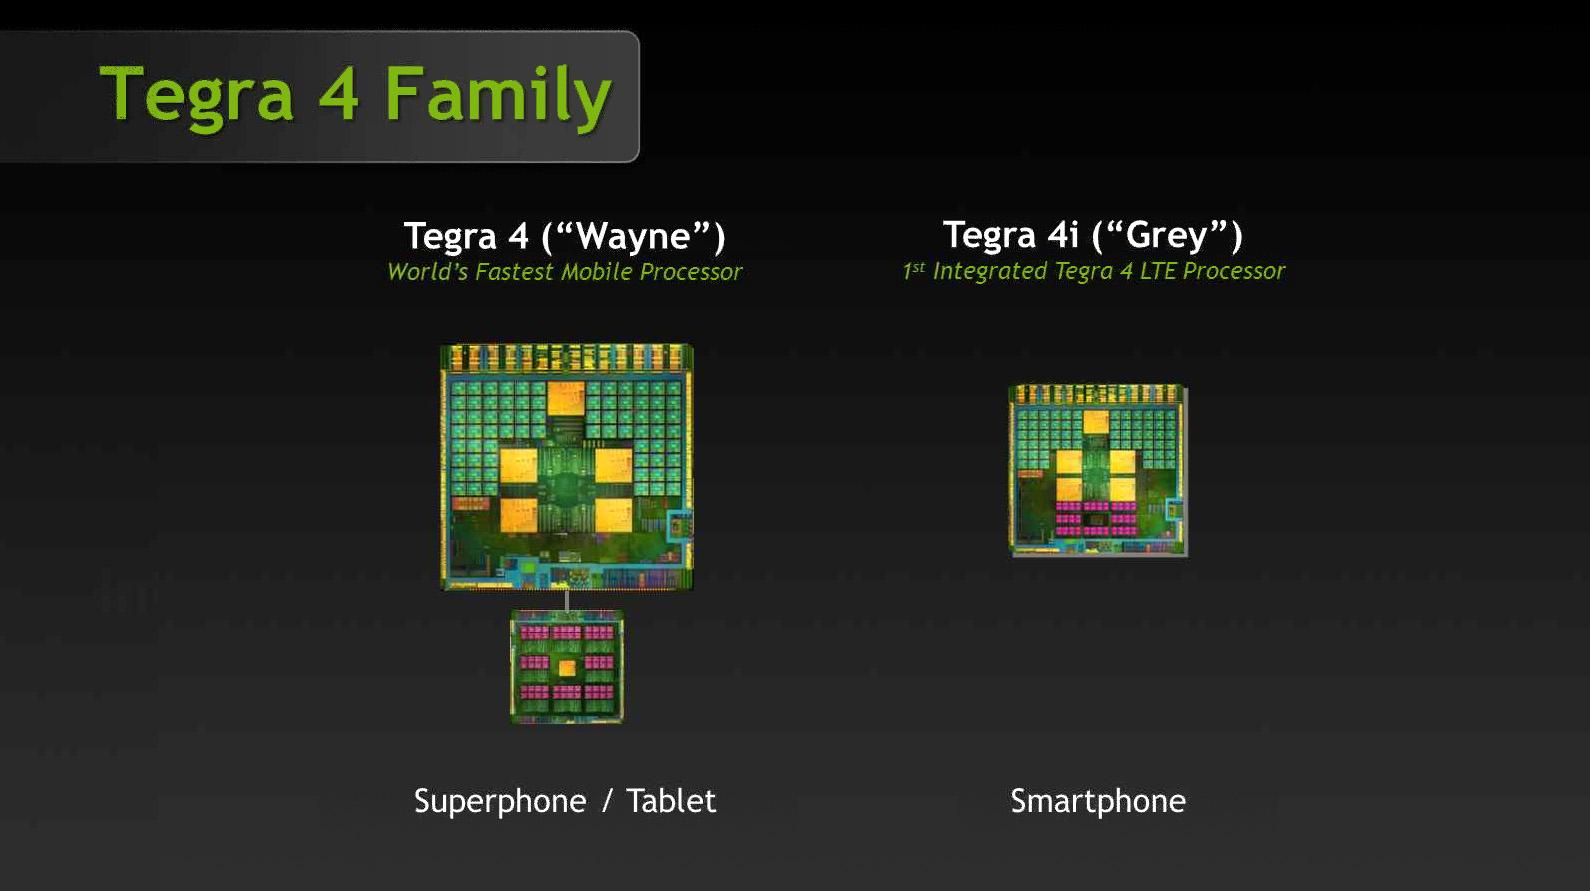 Tegra 4i (til høyre) er mindre enn Tegra 4, og radiobrikken som gir LTE-støtte er innebygget.